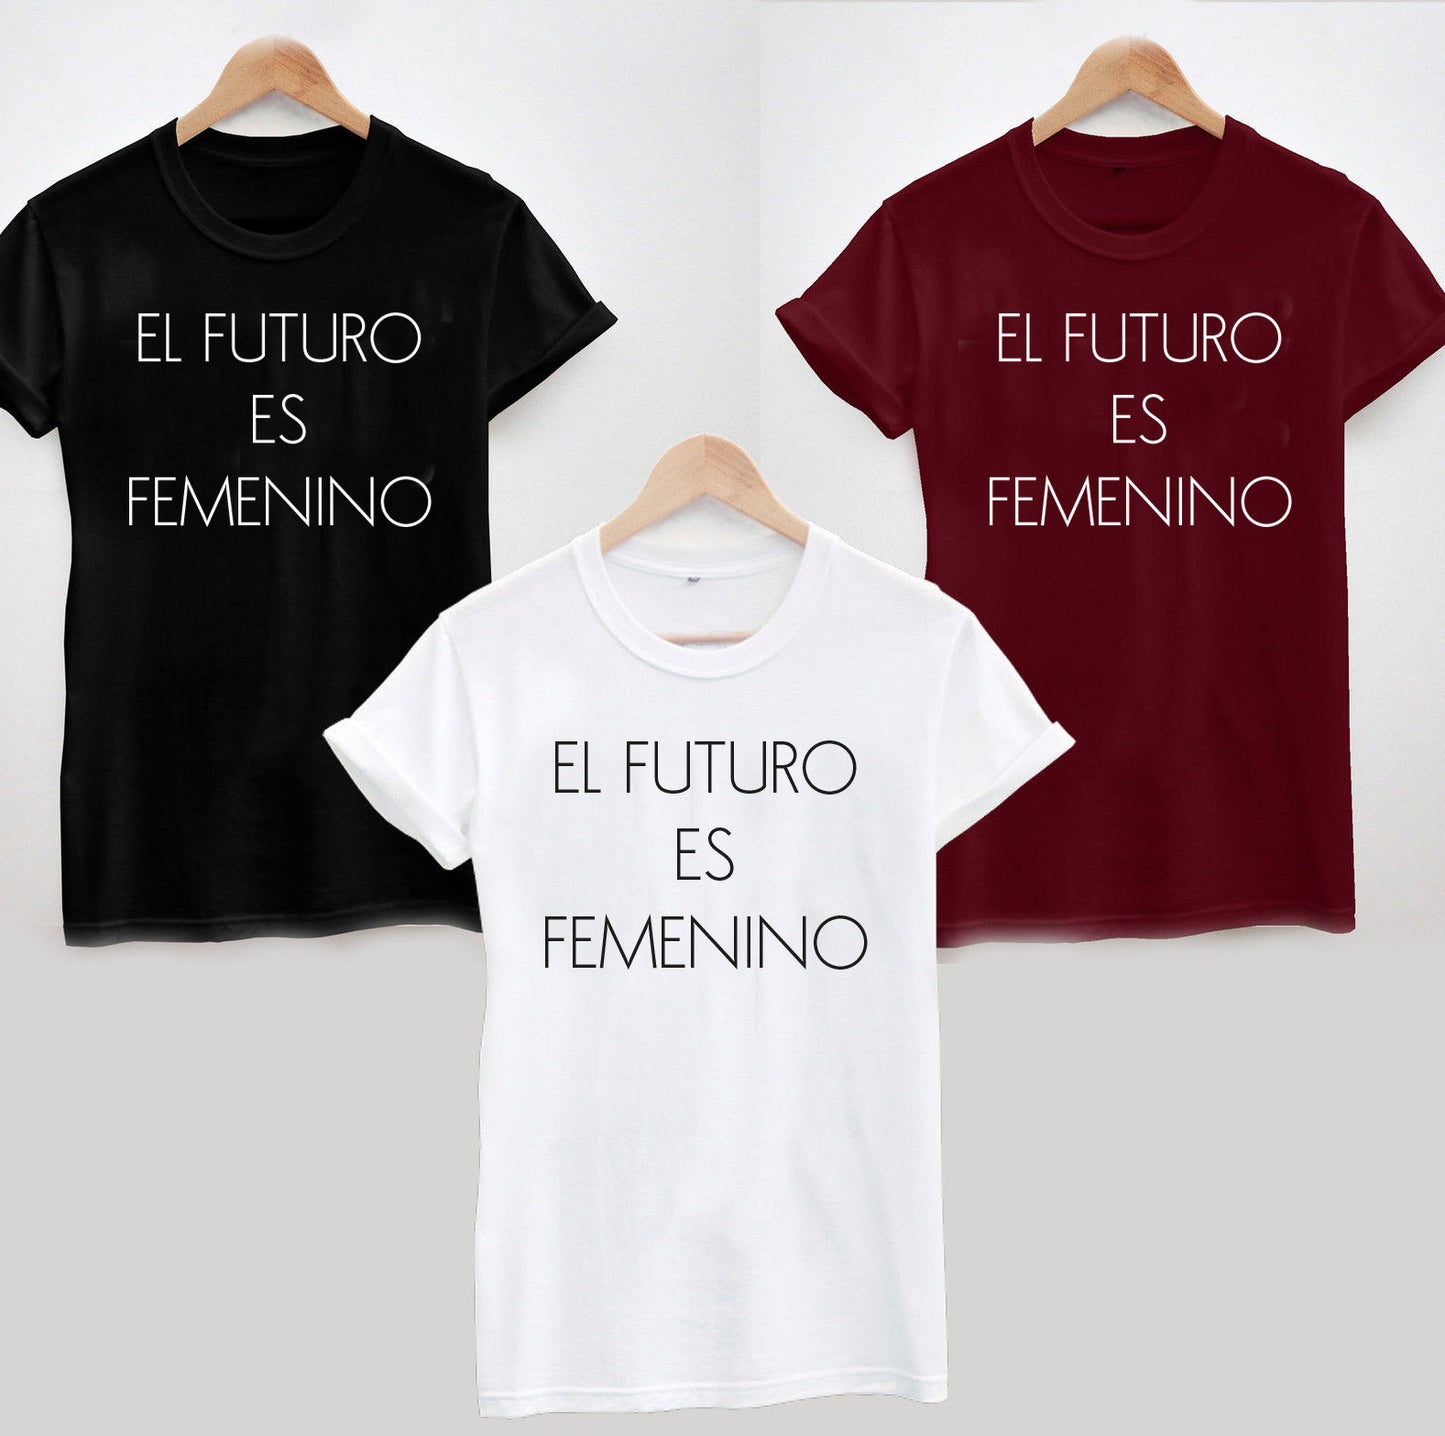 El futuro es femenino T-Shirt, Funny Cool Ladies or Unisex